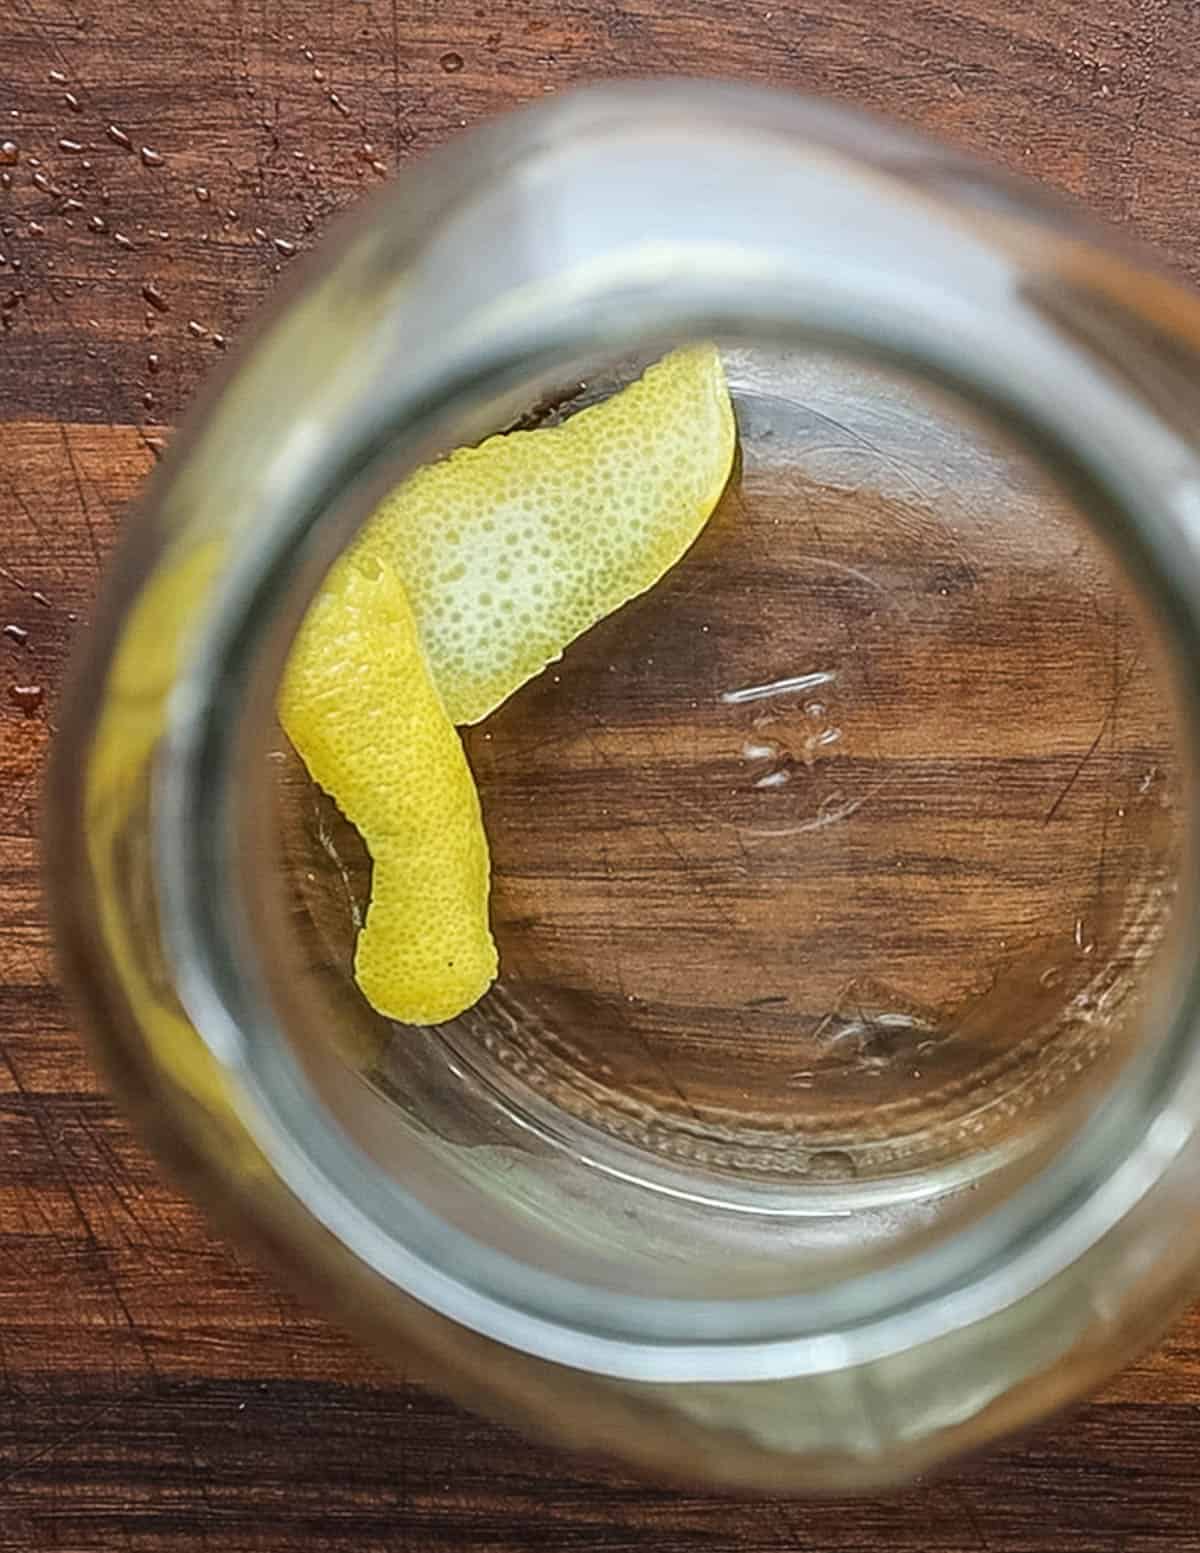 Adding a strip of lemon peel to a mason jar.